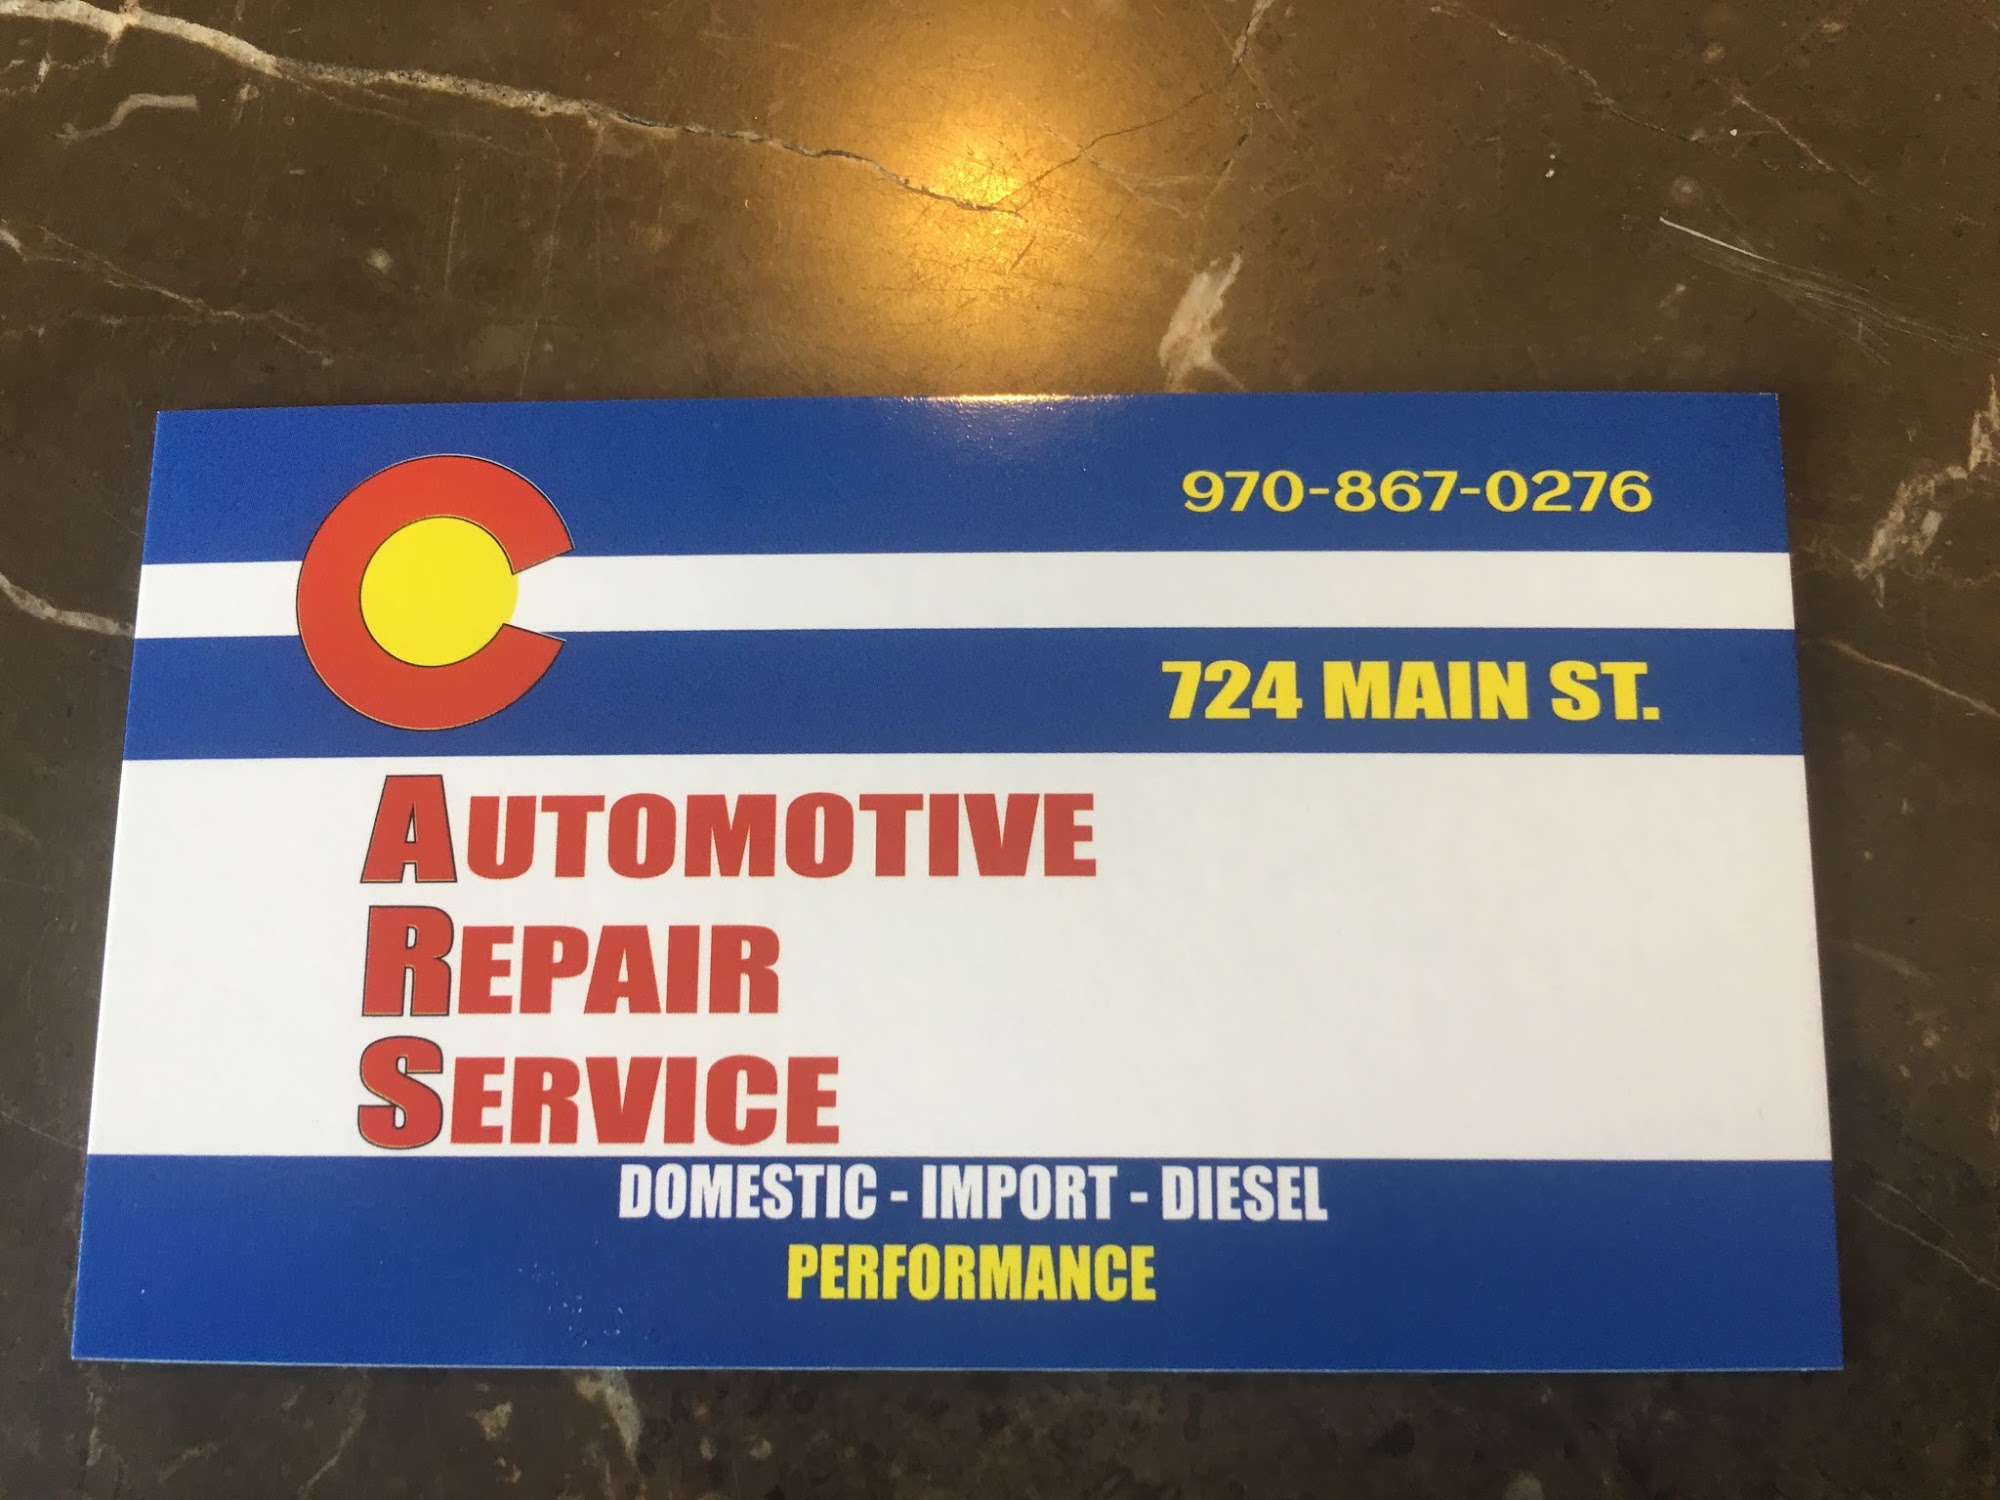 C.A.R.S (Colorado Auto Repair Services)